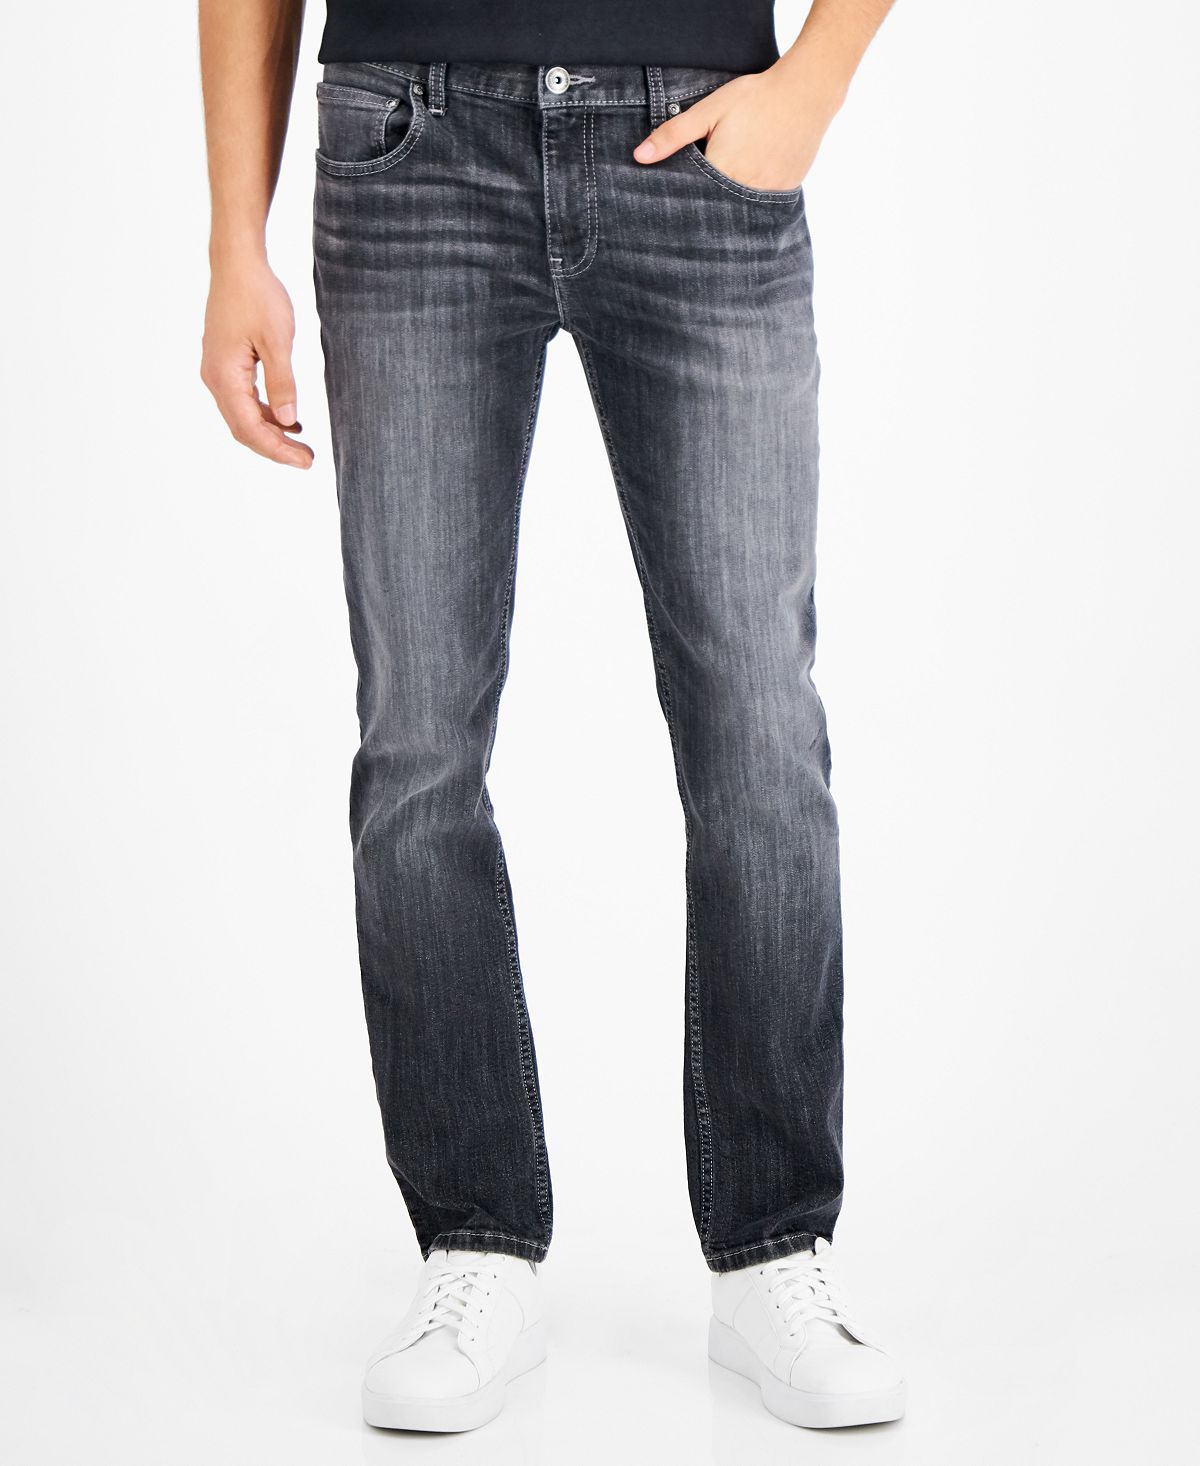 Мужские зауженные прямые джинсы tam, созданные для macy's INC International Concepts, мульти джинсы с потертостями 40 размер новые